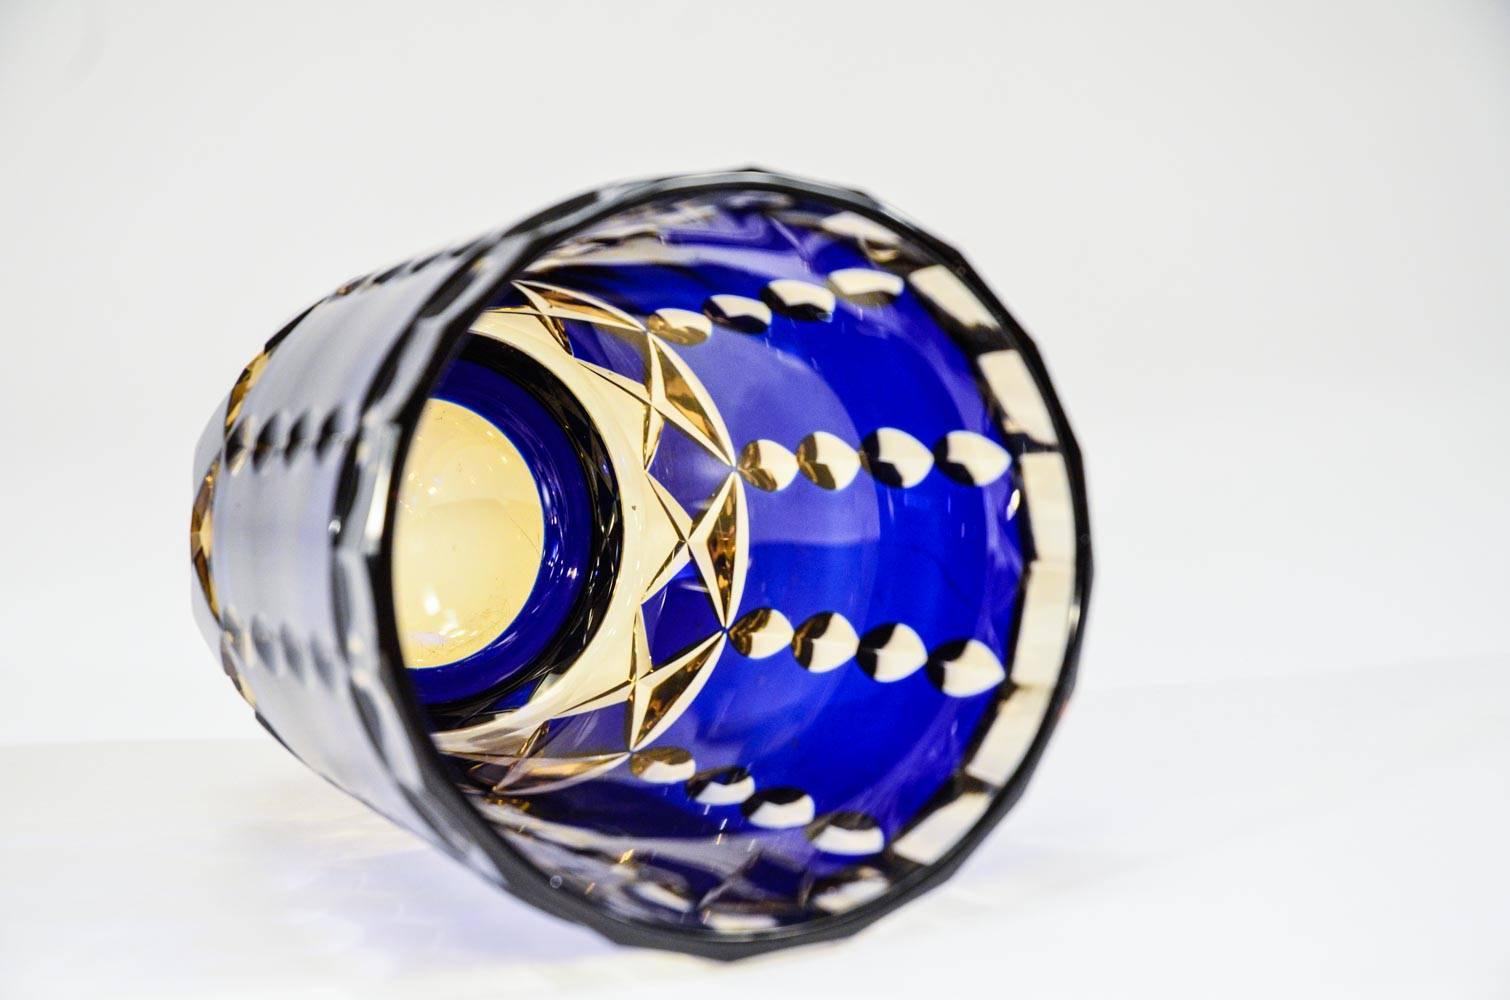 Diese Vase aus mundgeblasenem Val St. Lambert-Kristall zeichnet sich dadurch aus, dass sie zweifarbig ist: kobaltblaues Overlay, das auf Topas geschliffen ist und nicht auf klares Kristall, was einen besonders dramatischen Effekt erzeugt. Die